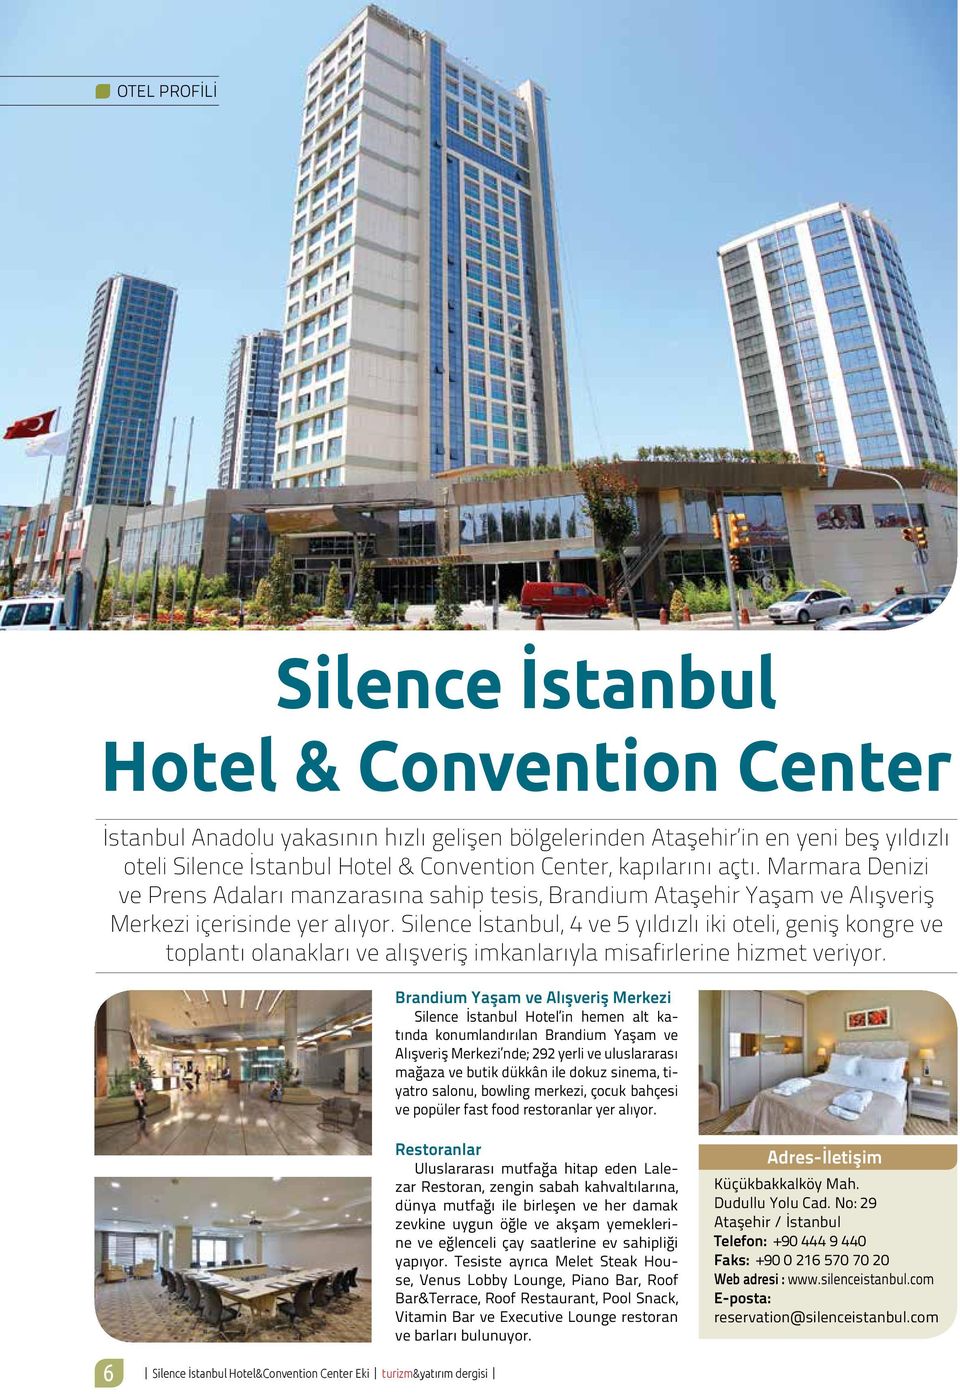 Silence İstanbul, 4 ve 5 yıldızlı iki oteli, geniş kongre ve toplantı olanakları ve alışveriş imkanlarıyla misafirlerine hizmet veriyor.